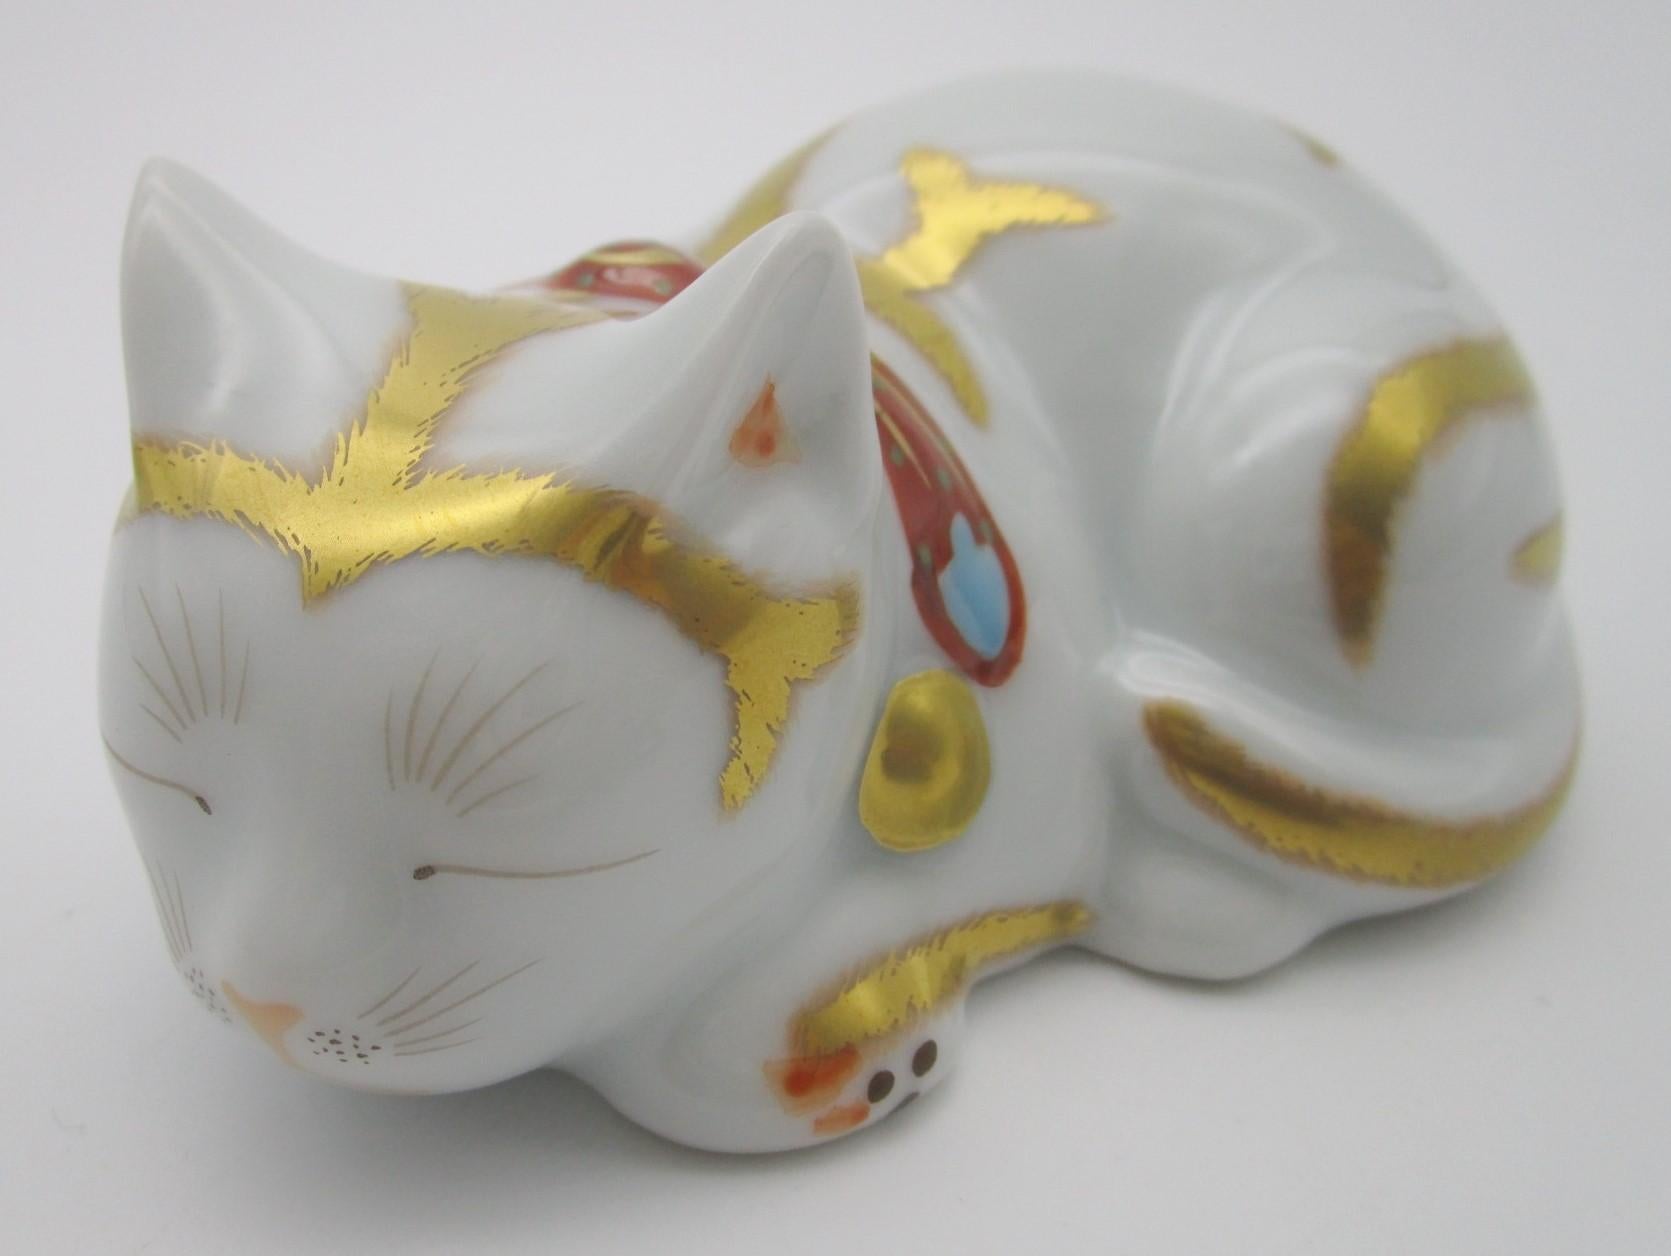 Contemporary Japanese Imari Gilded Porcelain Sleeping Cat by Kisen Kiln 1